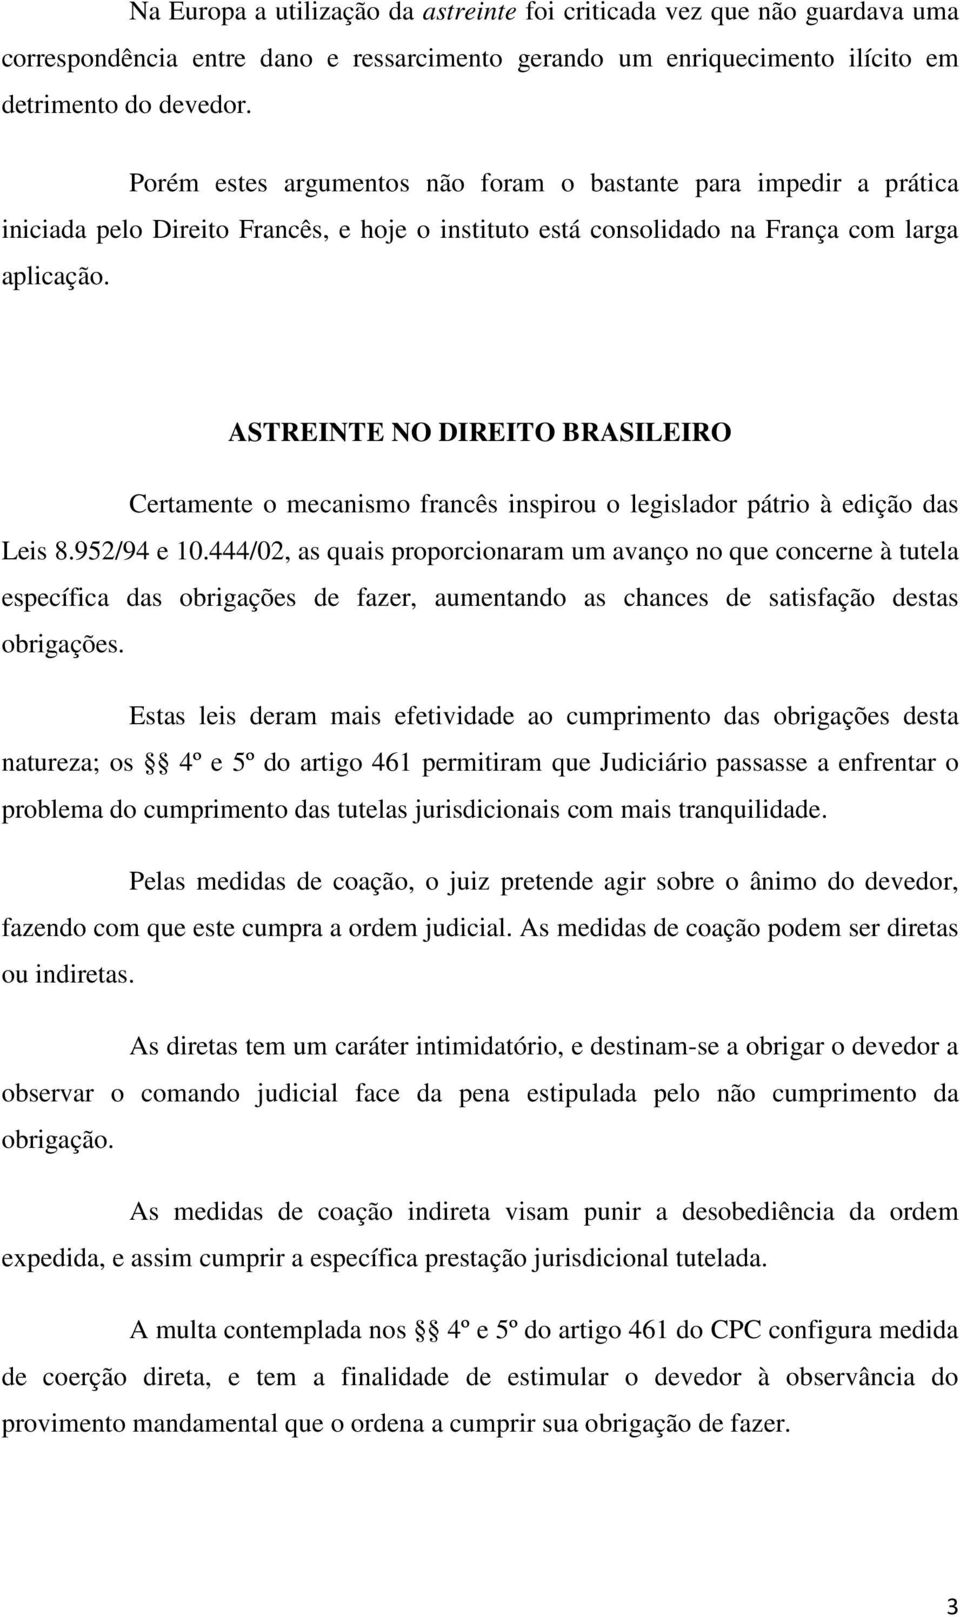 ASTREINTE NO DIREITO BRASILEIRO Certamente o mecanismo francês inspirou o legislador pátrio à edição das Leis 8.952/94 e 10.